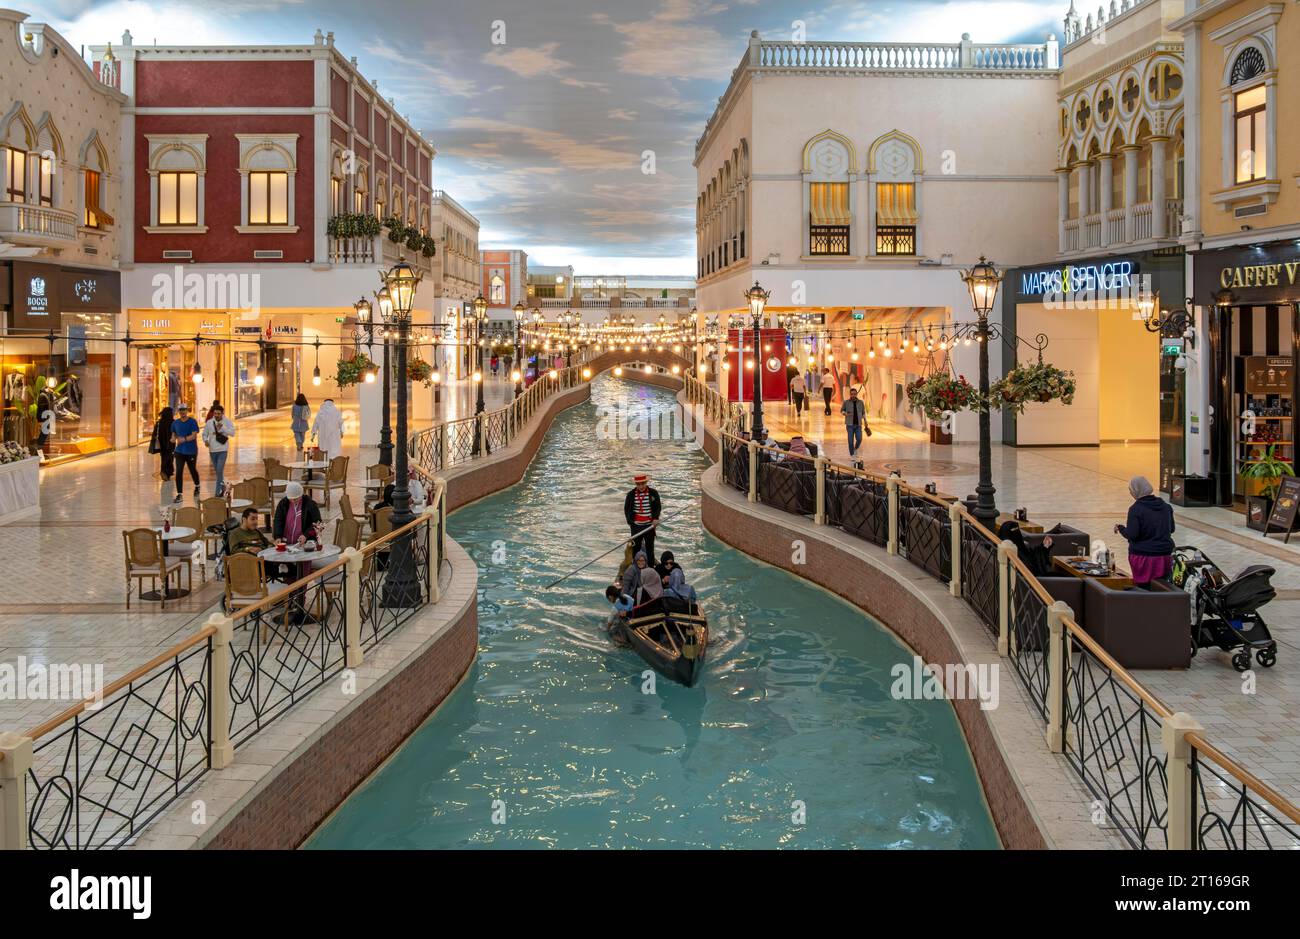 Balade en gondole sur le canal intérieur au Villaggio Mall, Doha, Qatar Banque D'Images